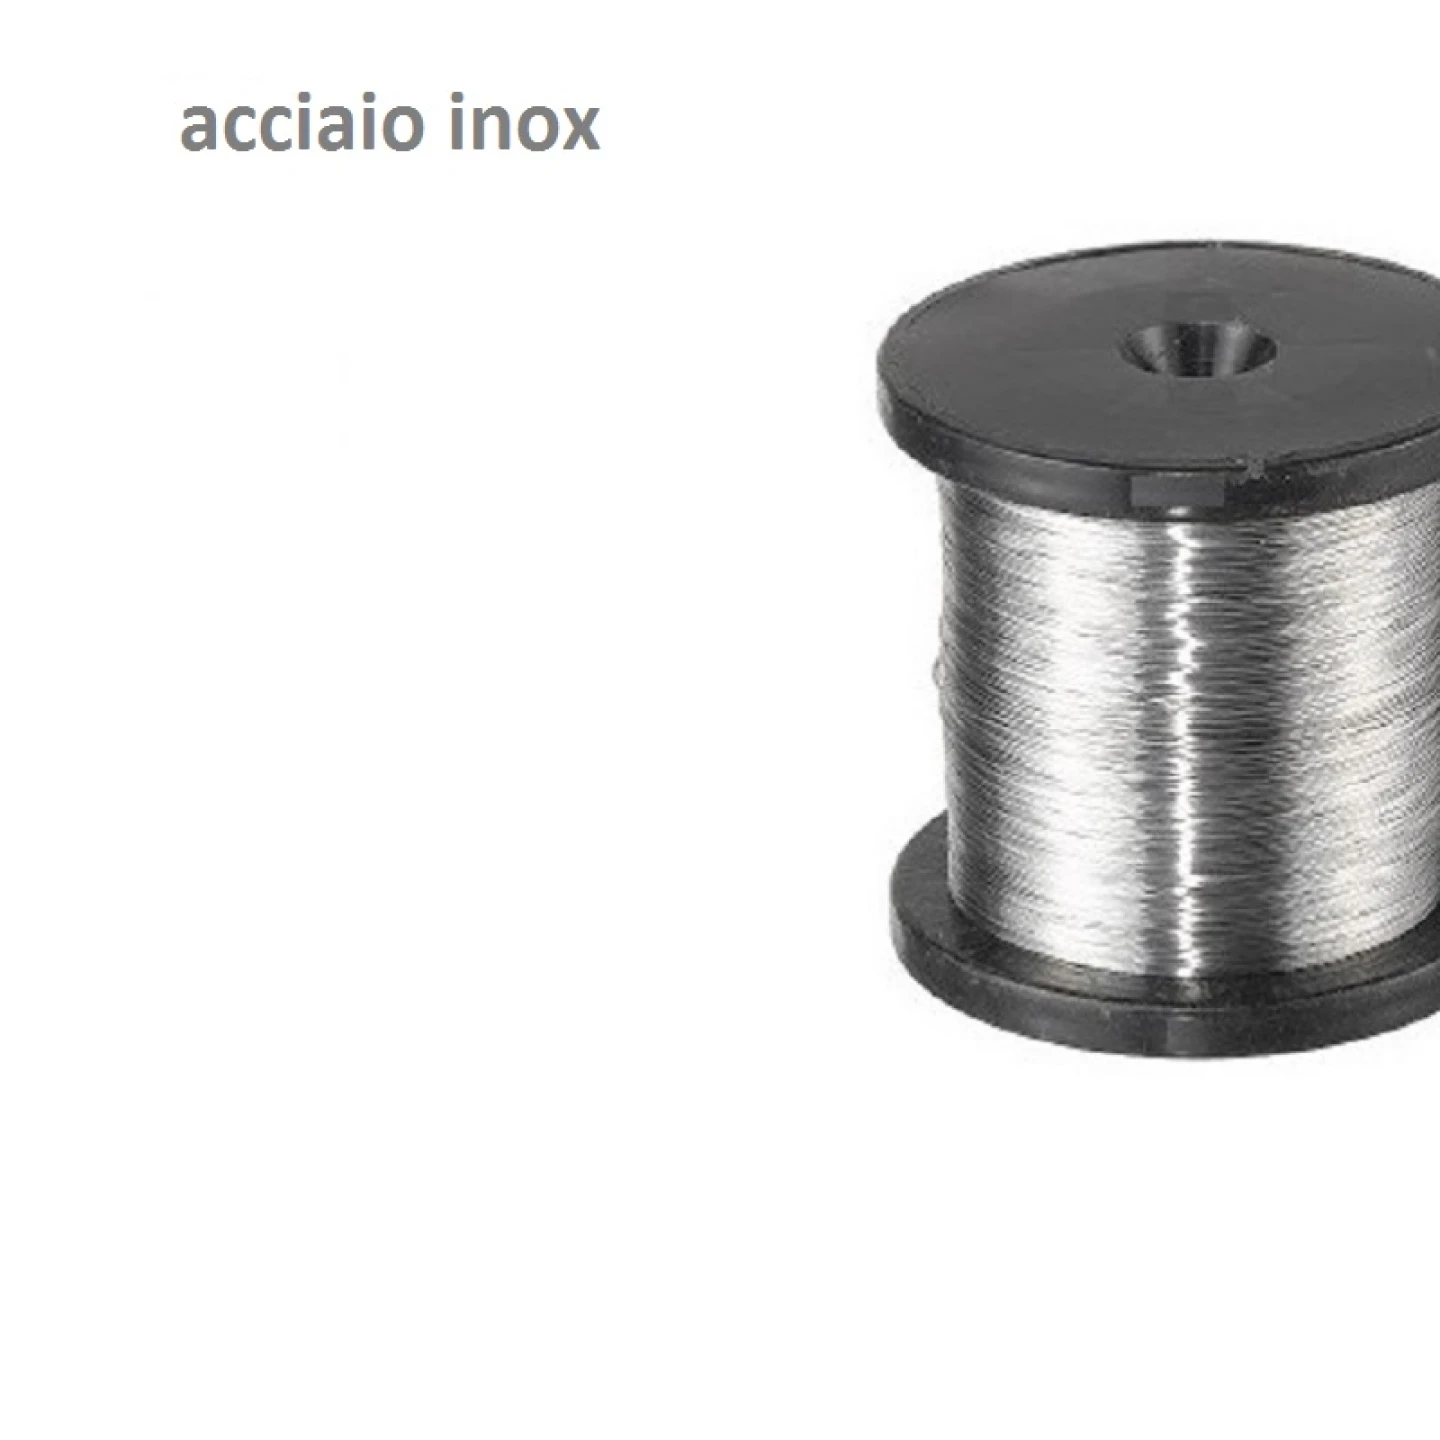 acciaio-inox-new